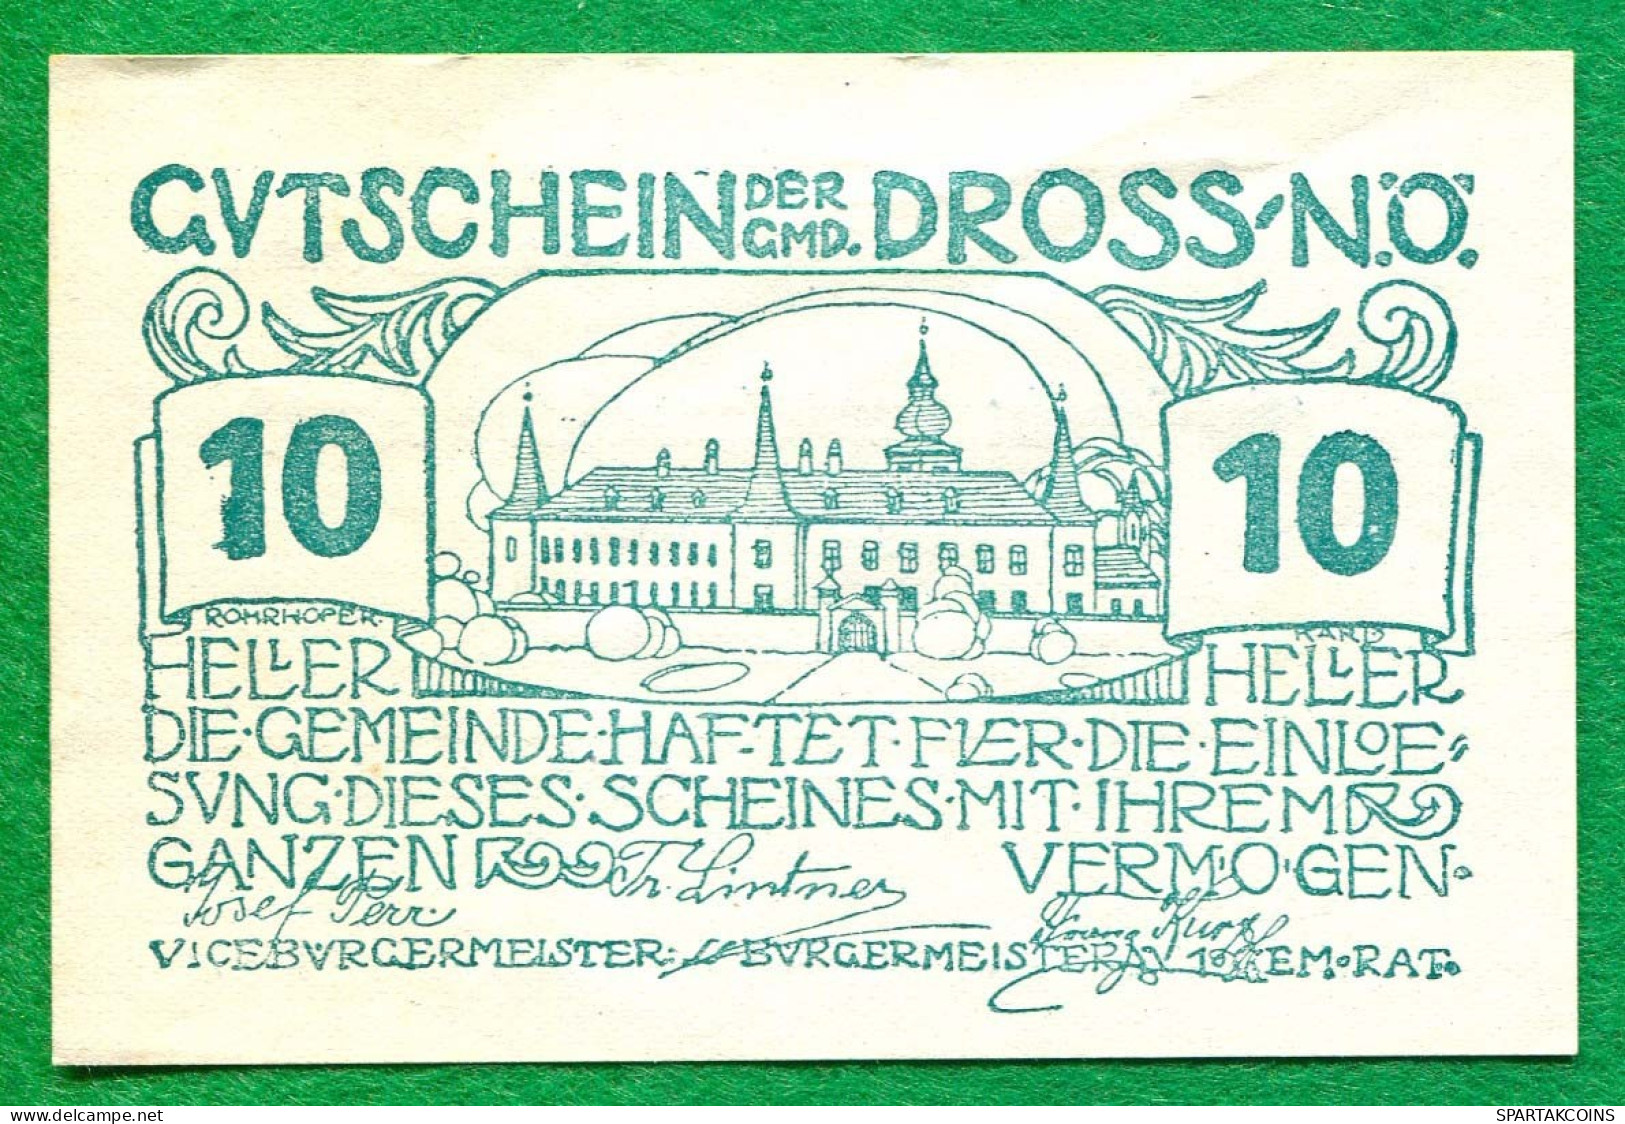 10 Heller 1920 DROSS Österreich UNC Notgeld Papiergeld Banknote #P10282 - [11] Local Banknote Issues